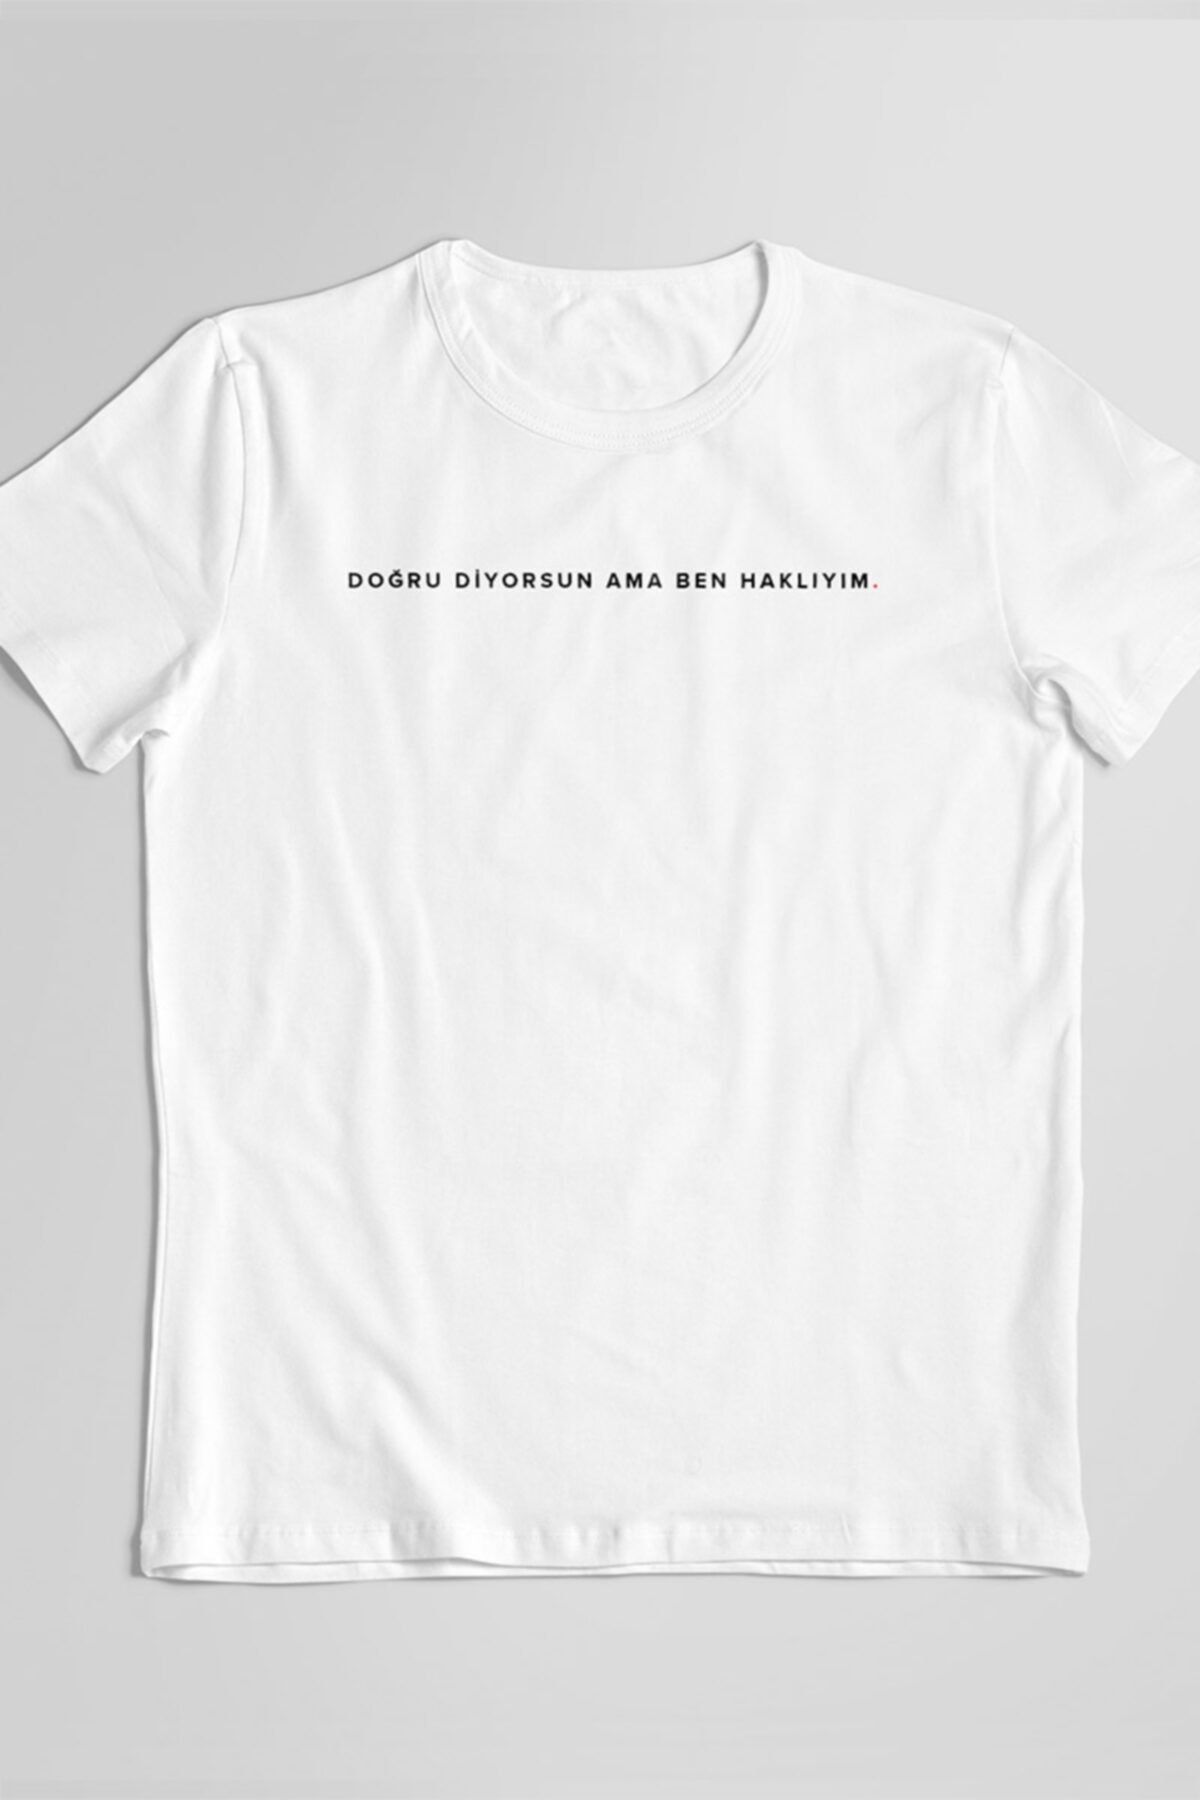 STUFF İSTANBUL Unisex Doğru Diyorsun Ama Ben Haklıyım Komik Söz Baskılı Beyaz T-shirt